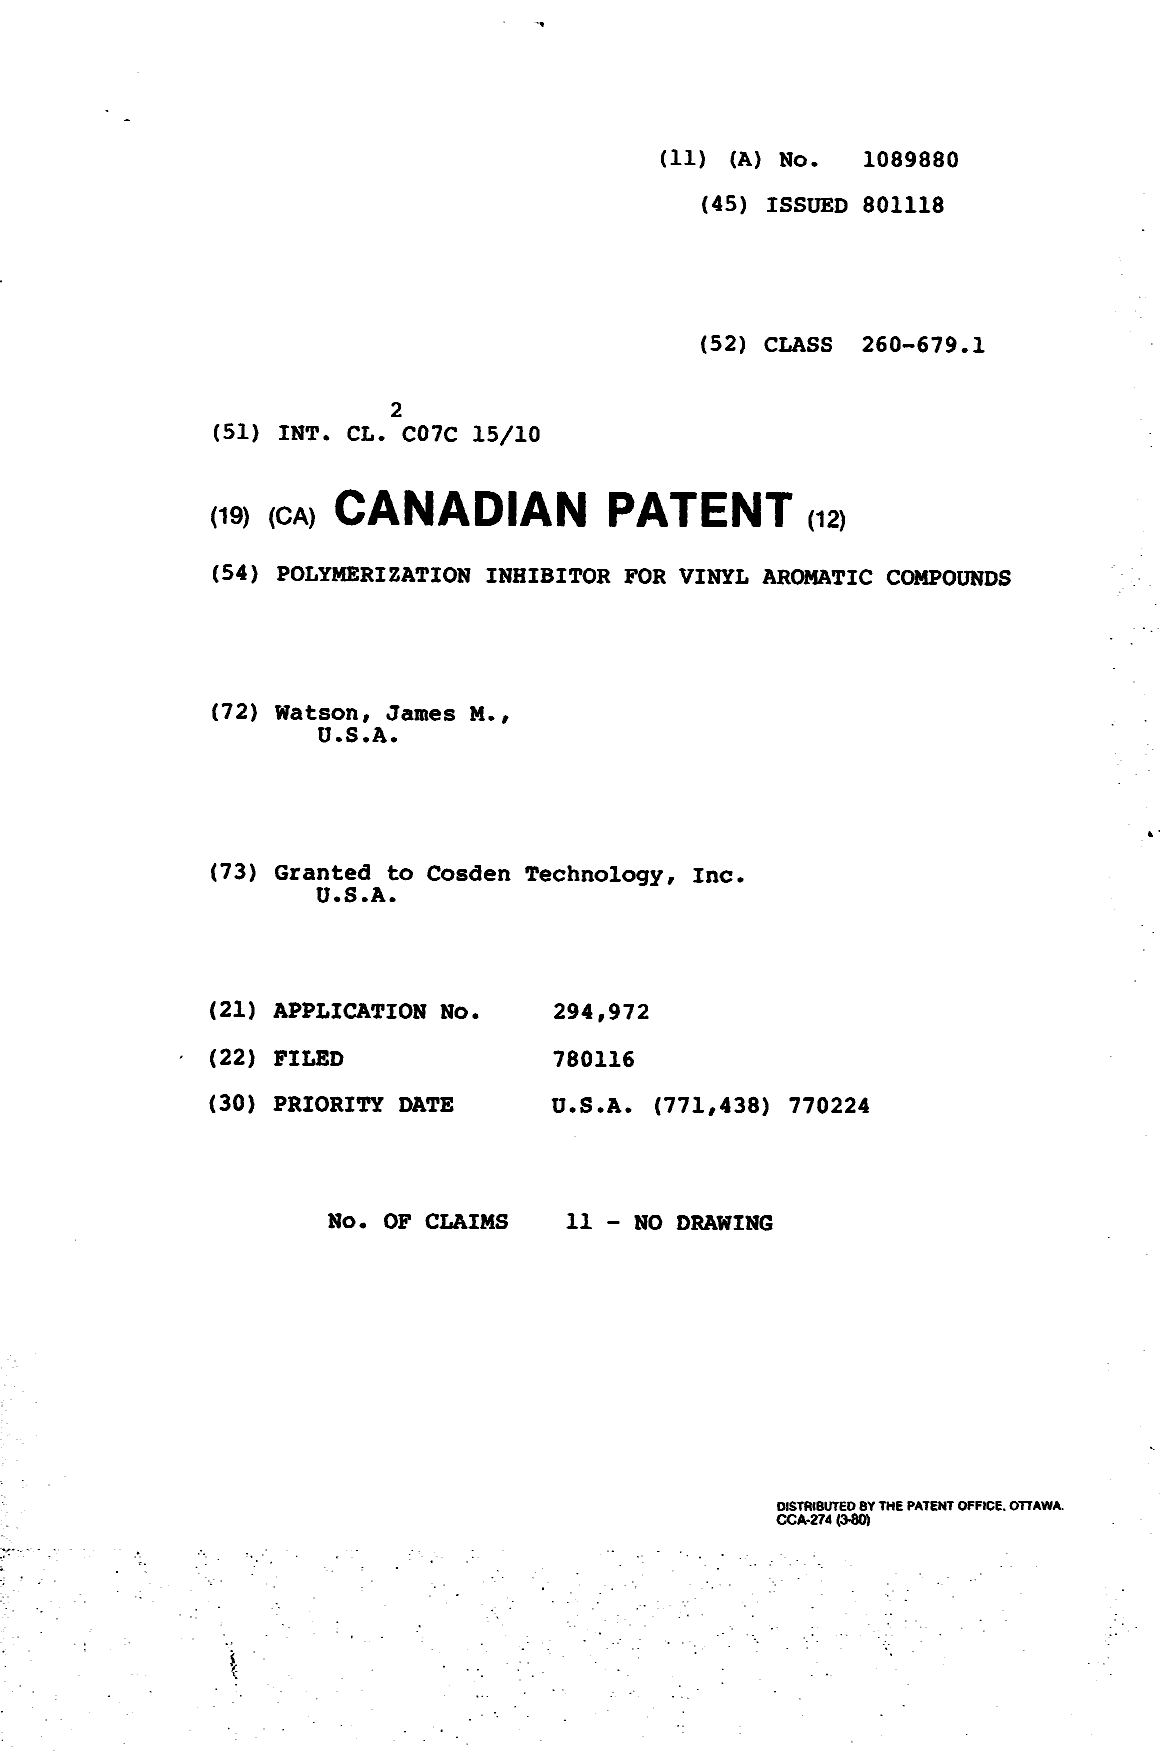 Document de brevet canadien 1089880. Page couverture 19940413. Image 1 de 1